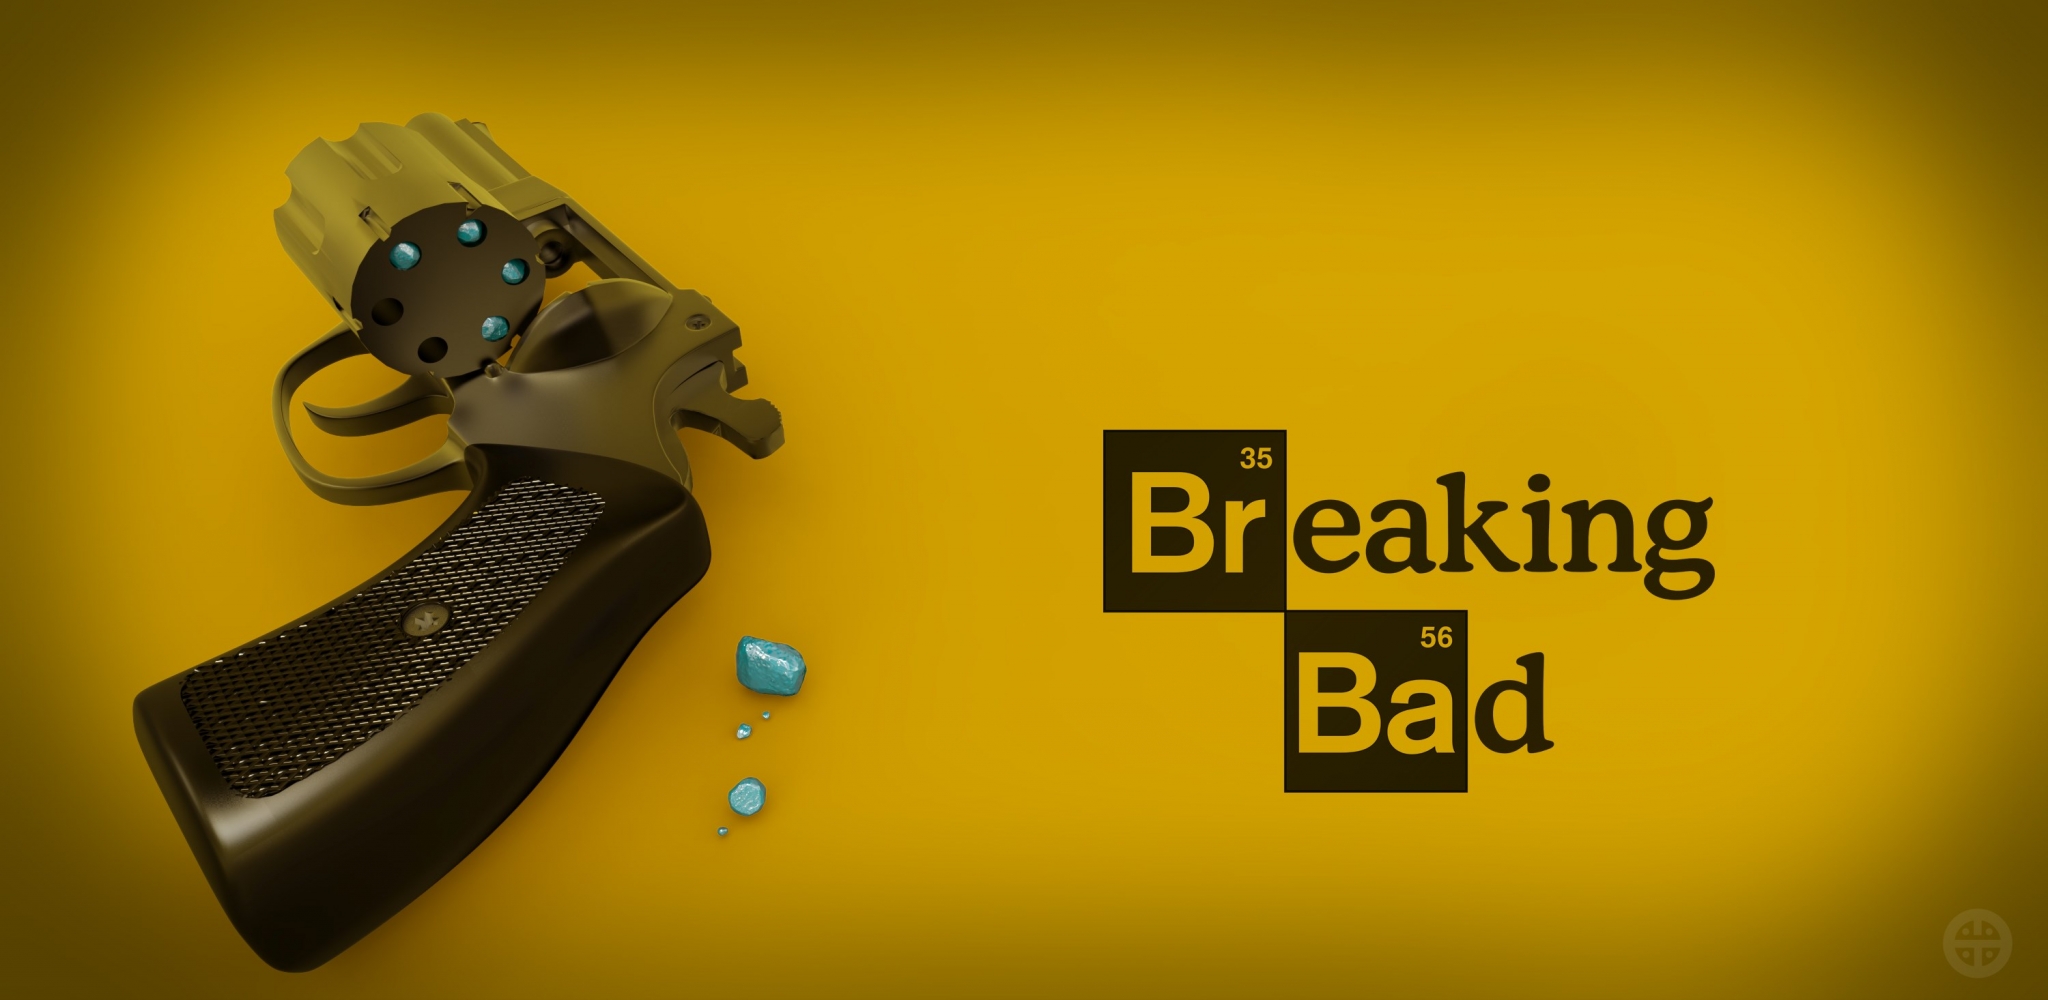 Breaking Bad Season 1 , HD Wallpaper & Backgrounds